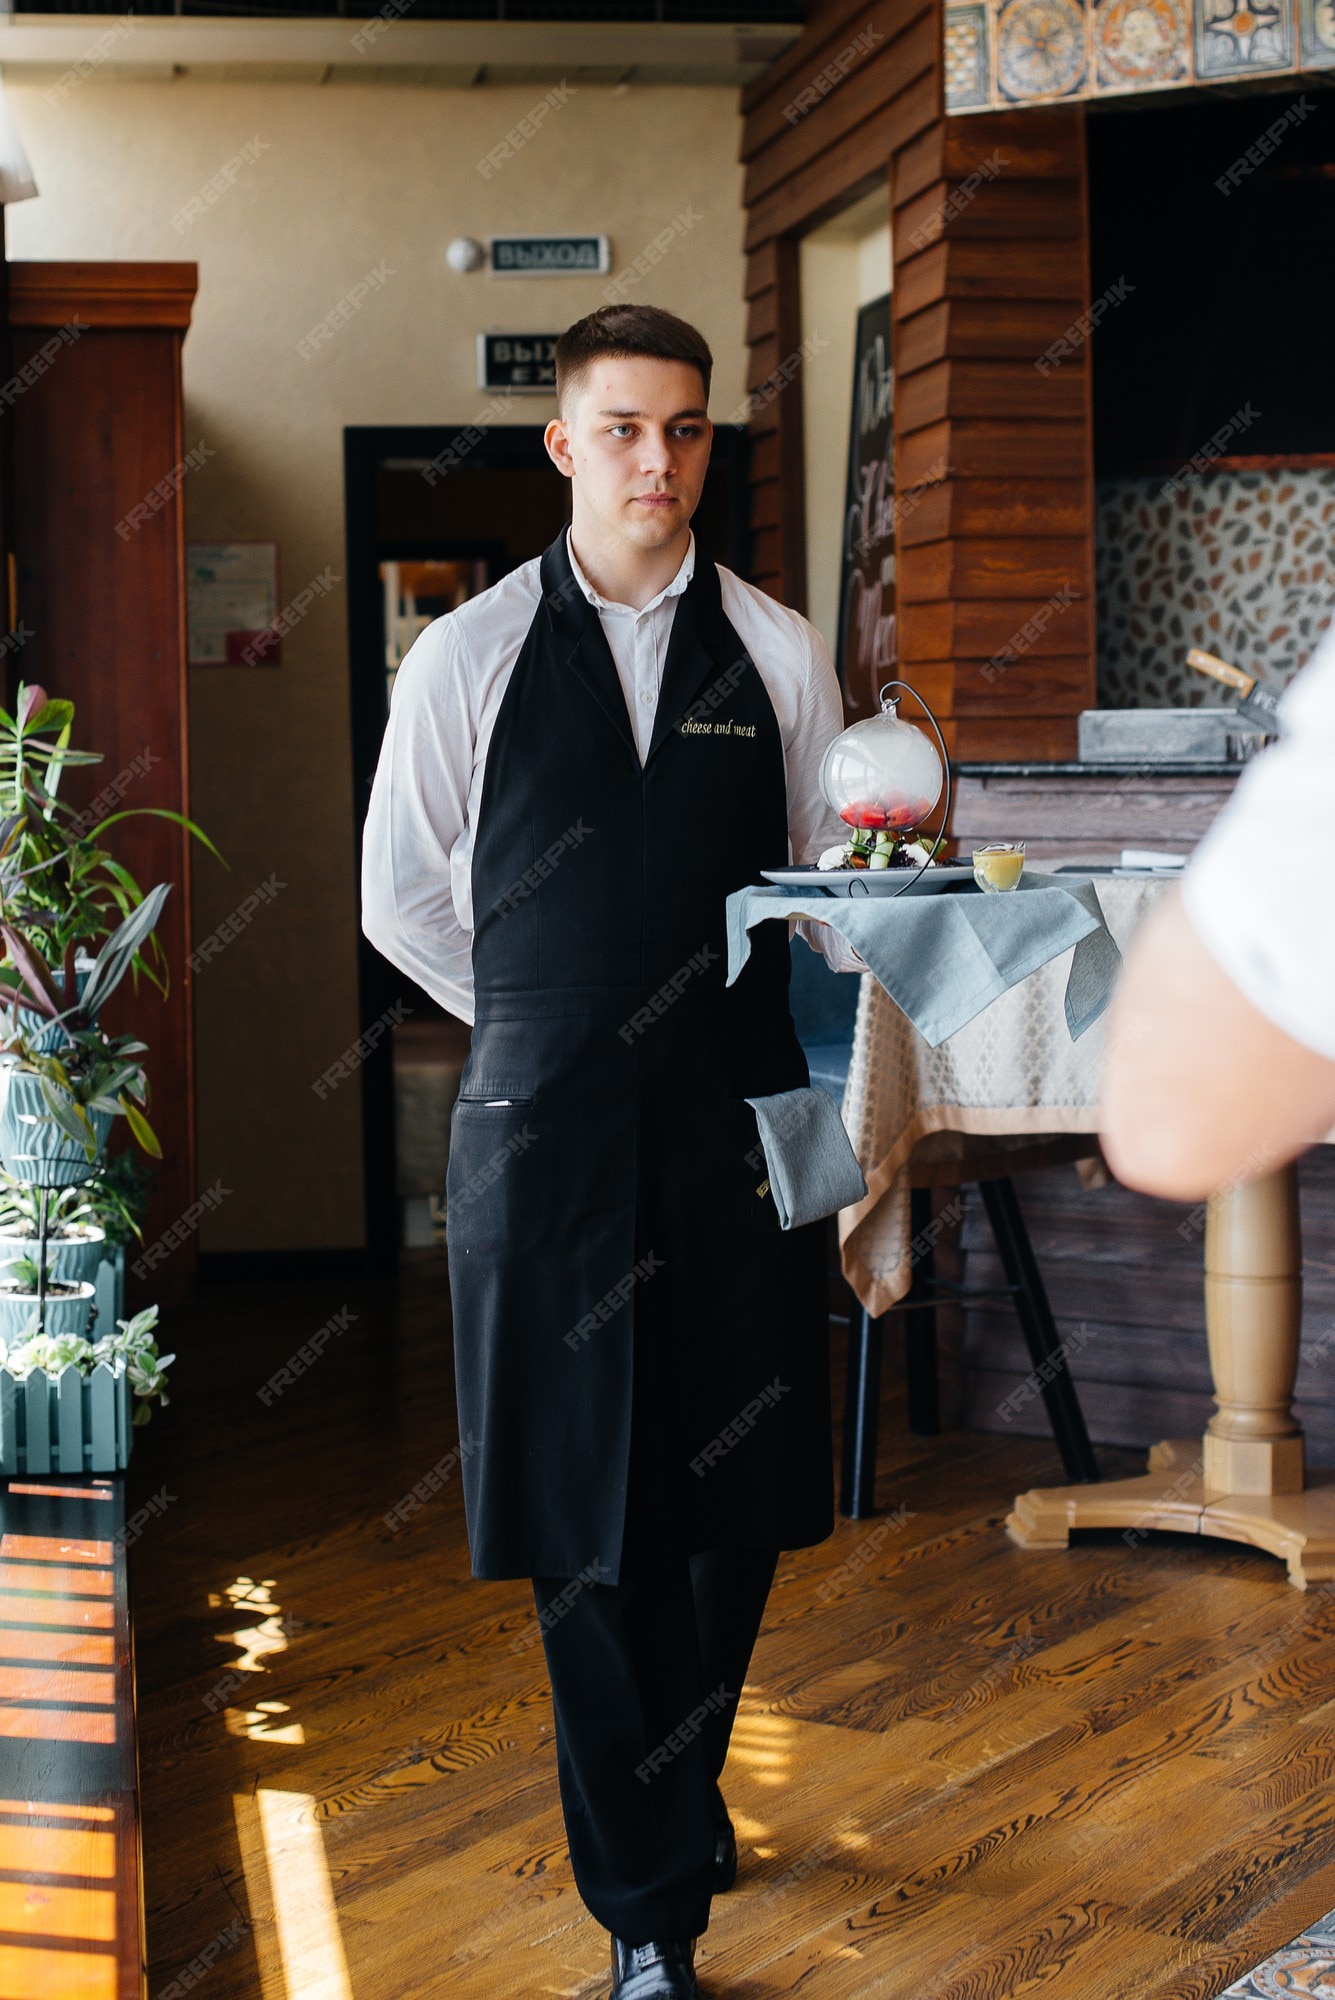 mayor Dibuja una imagen hipoteca Un joven camarero con un elegante uniforme se encuentra con un exquisito  plato en una bandeja cerca de la mesa en un hermoso restaurante de cerca.  actividad de restauración, del más alto